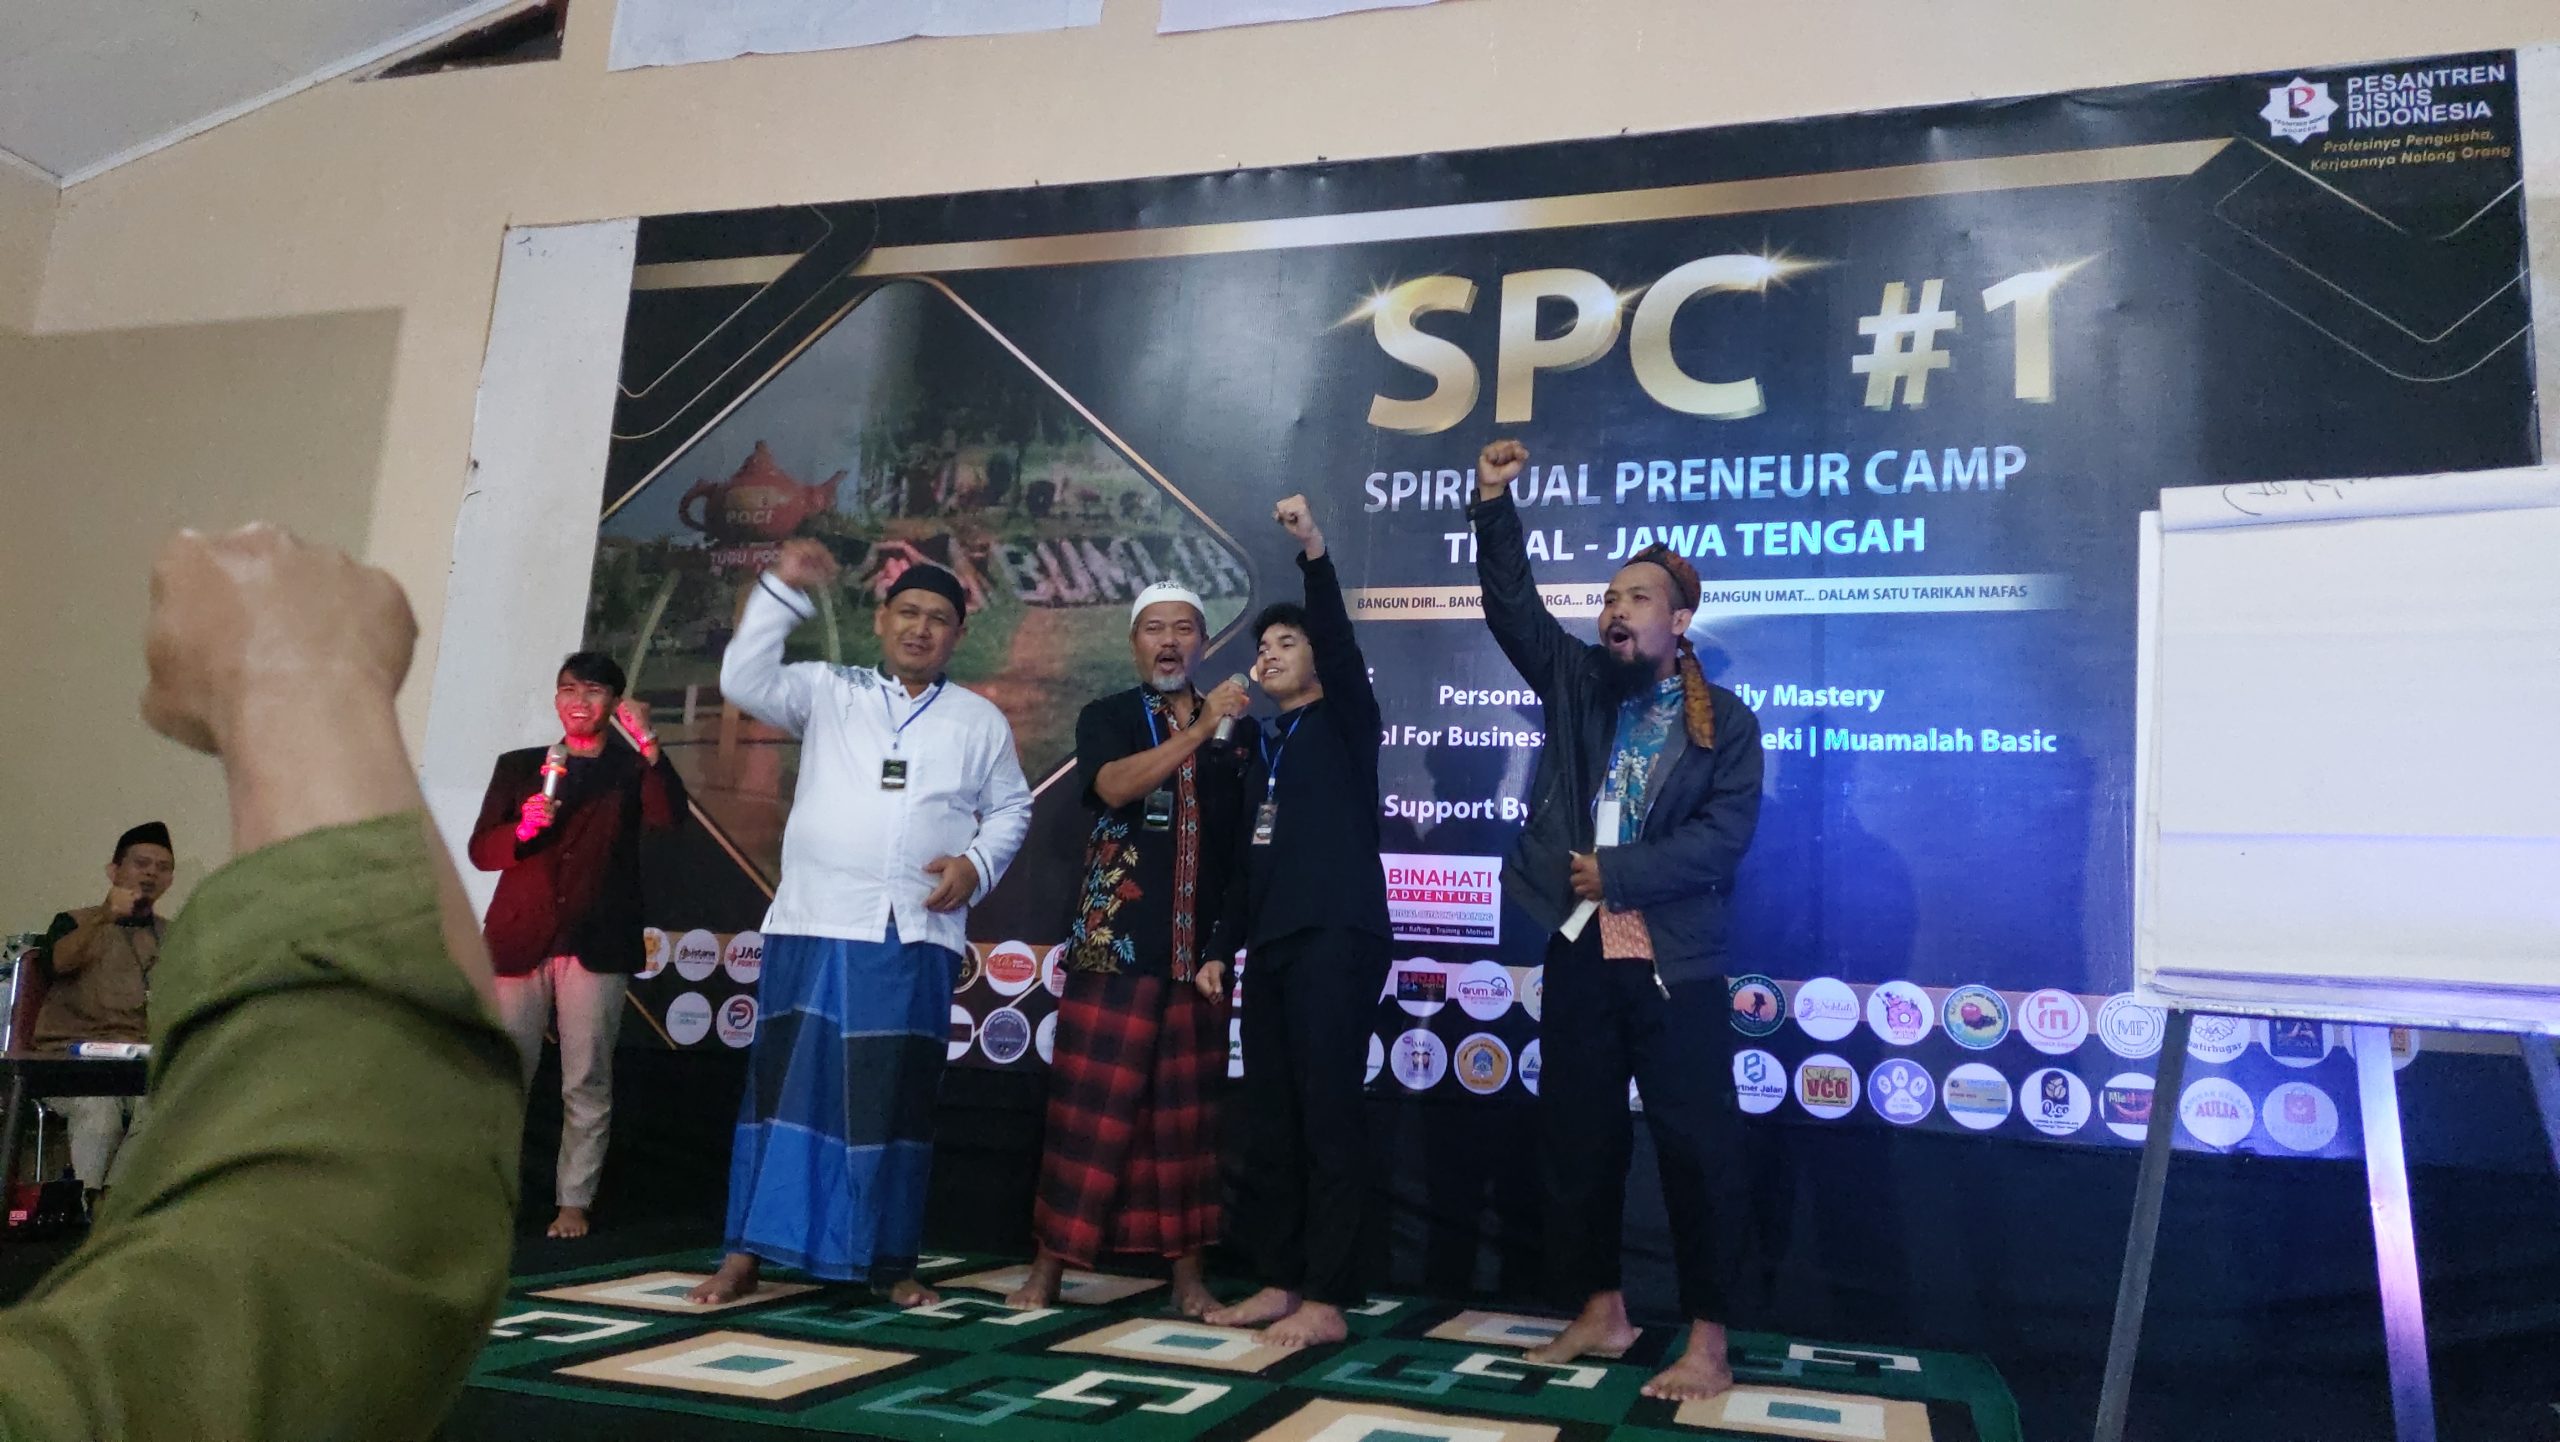 Sukses Gelar SPC di Tegal, Pesantren Bisnis Indonesia Lahirkan Pengusaha Muslim Berkarakter. Foto: Mas Andre Hariyanto (SUARA UTAMA)